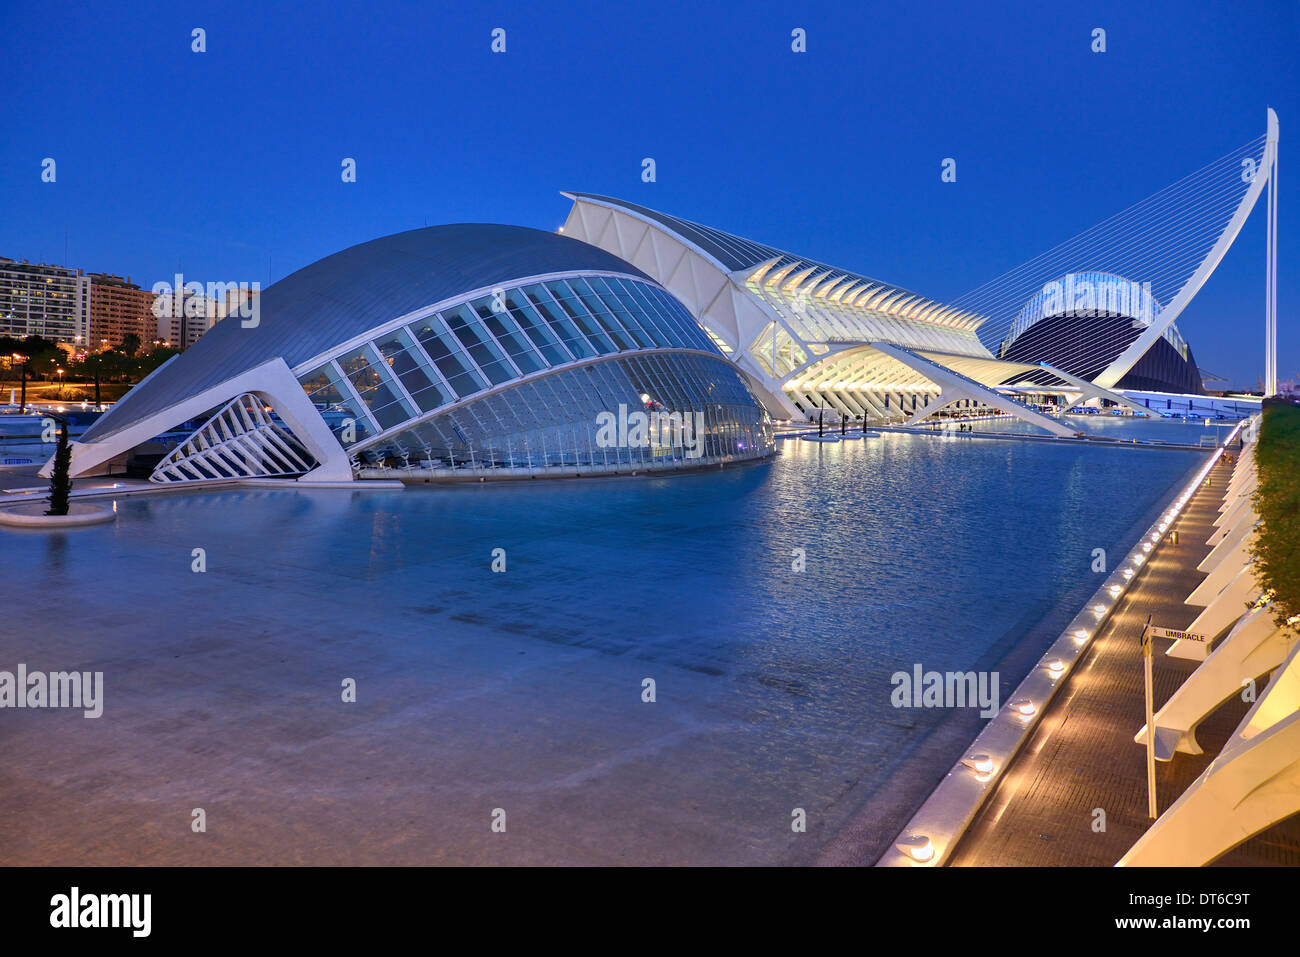 Spain, Valencia, La Ciudad de las Artes y las Ciencias, City of Arts and Sciences, Overall vista of complex of buildings at dusk Stock Photo